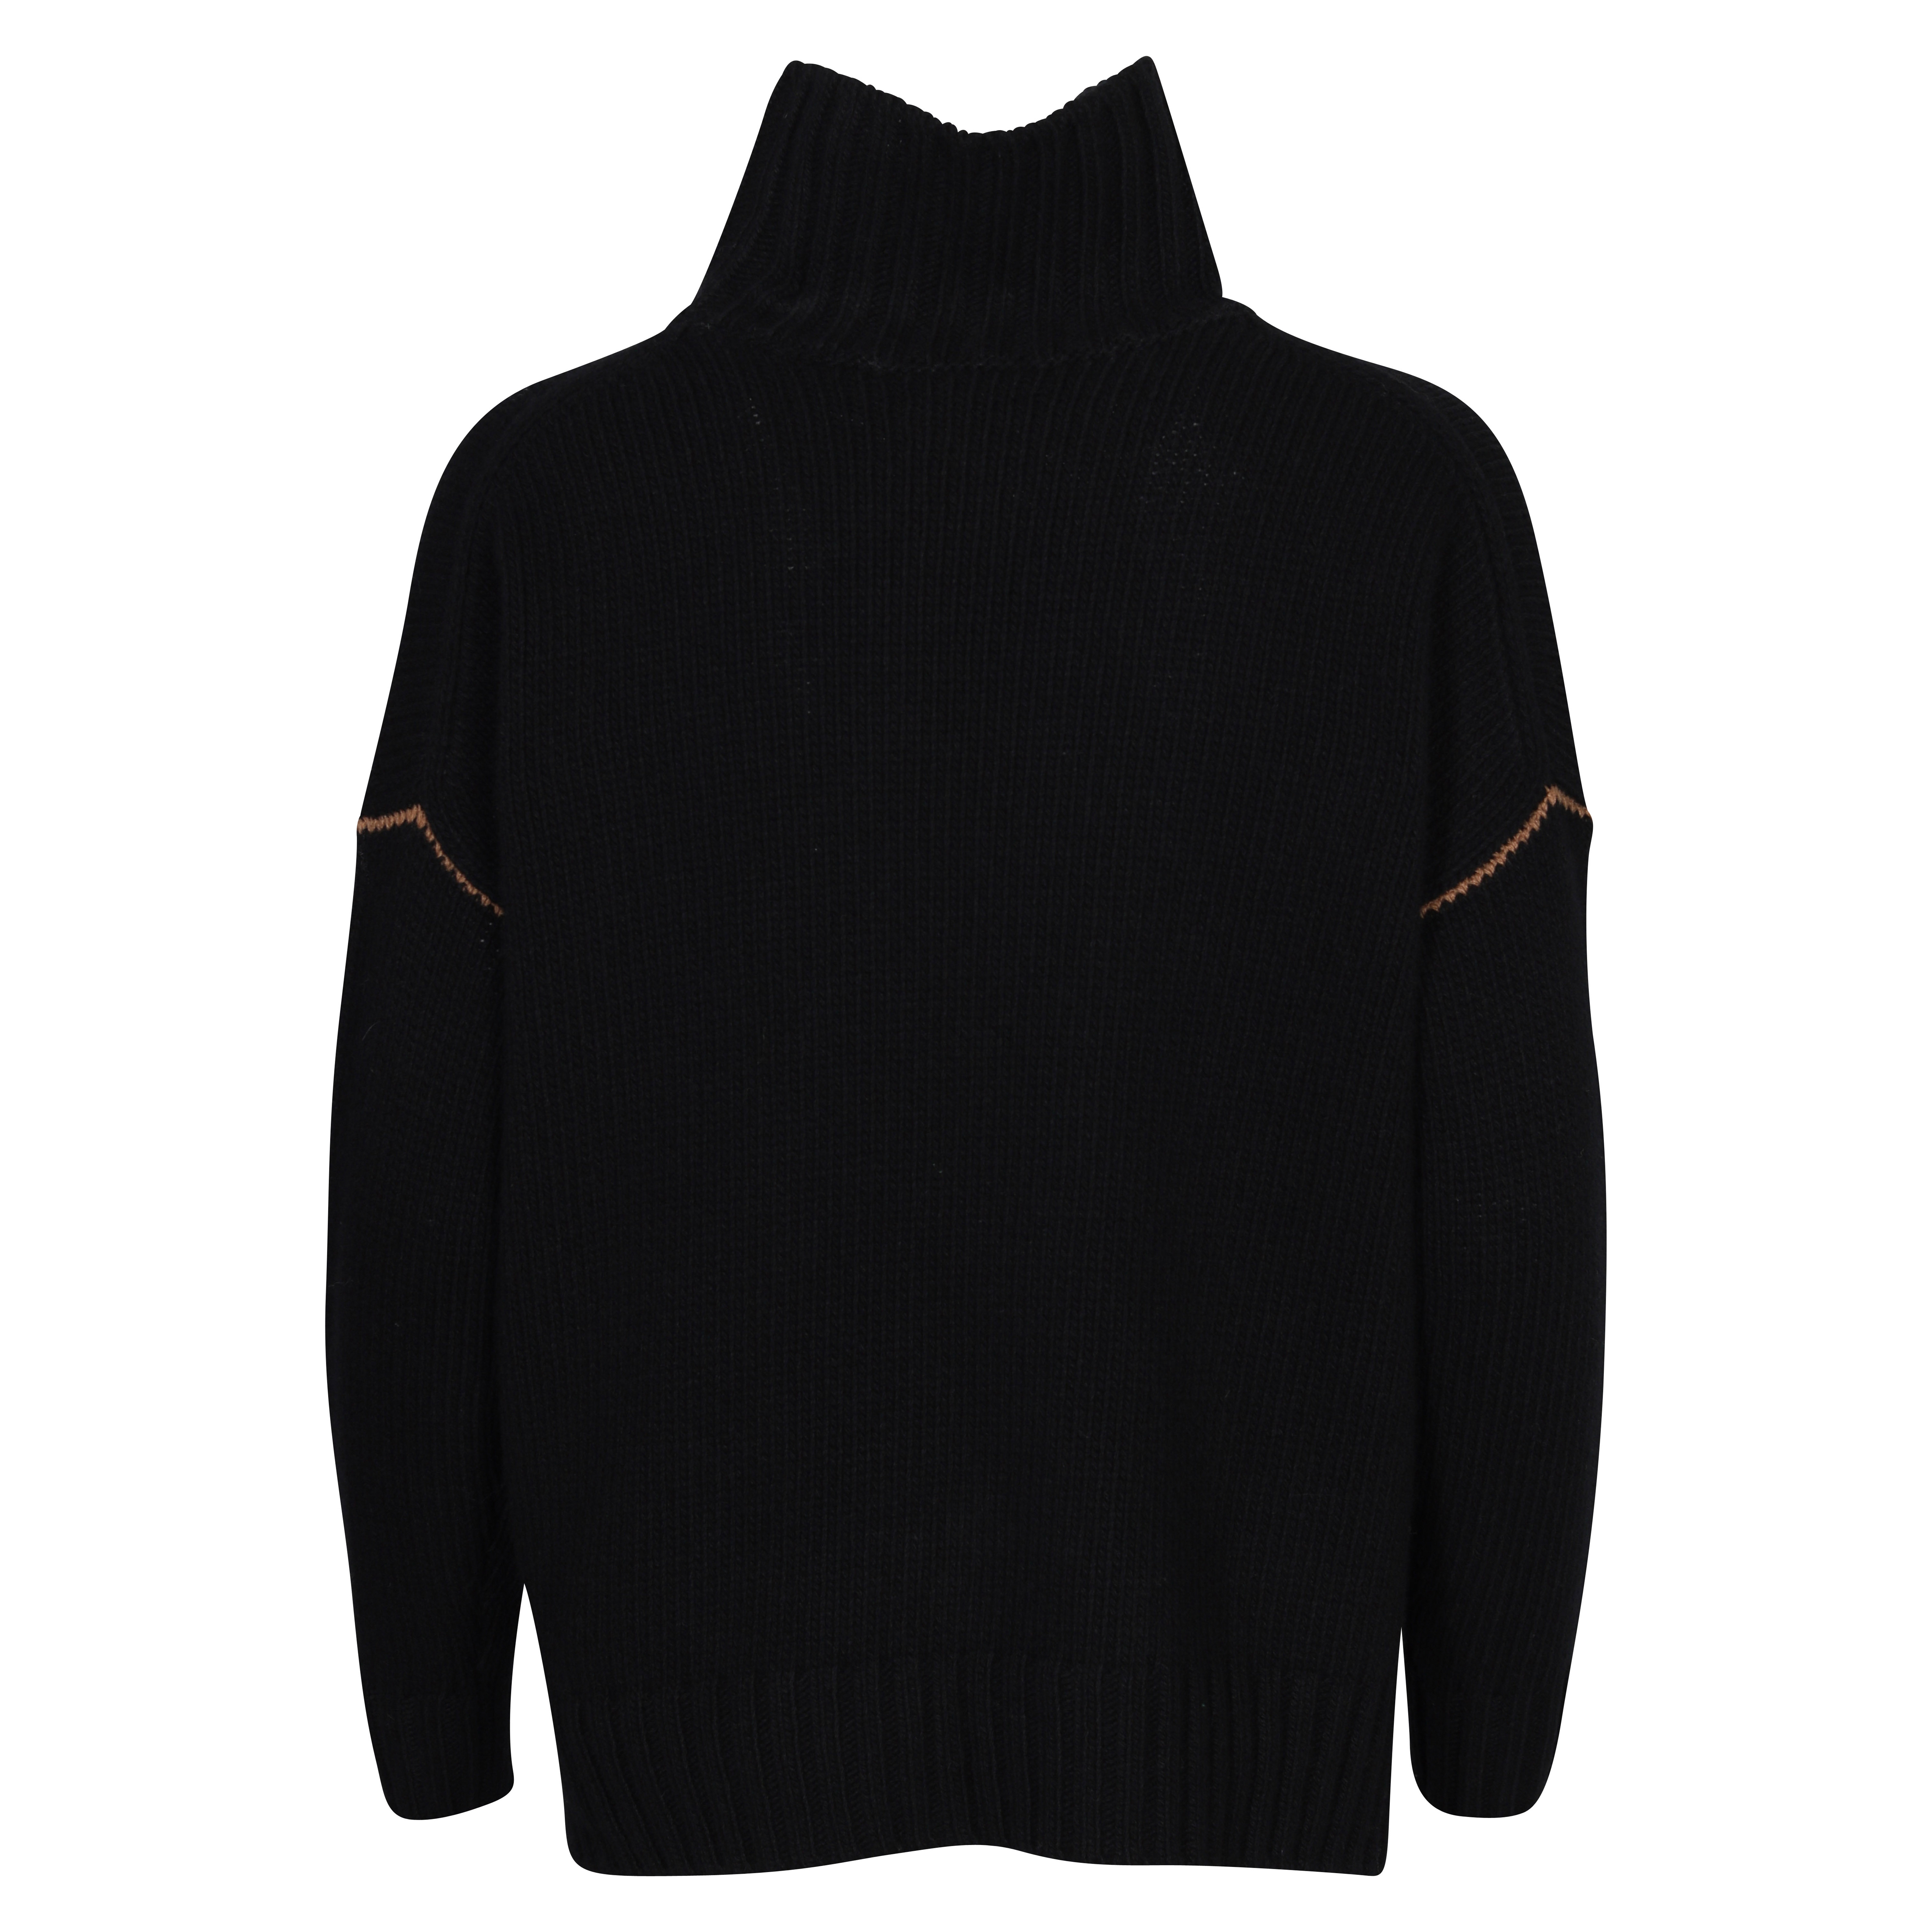 Woolrich Cozy Turtleneck Sweater in Black